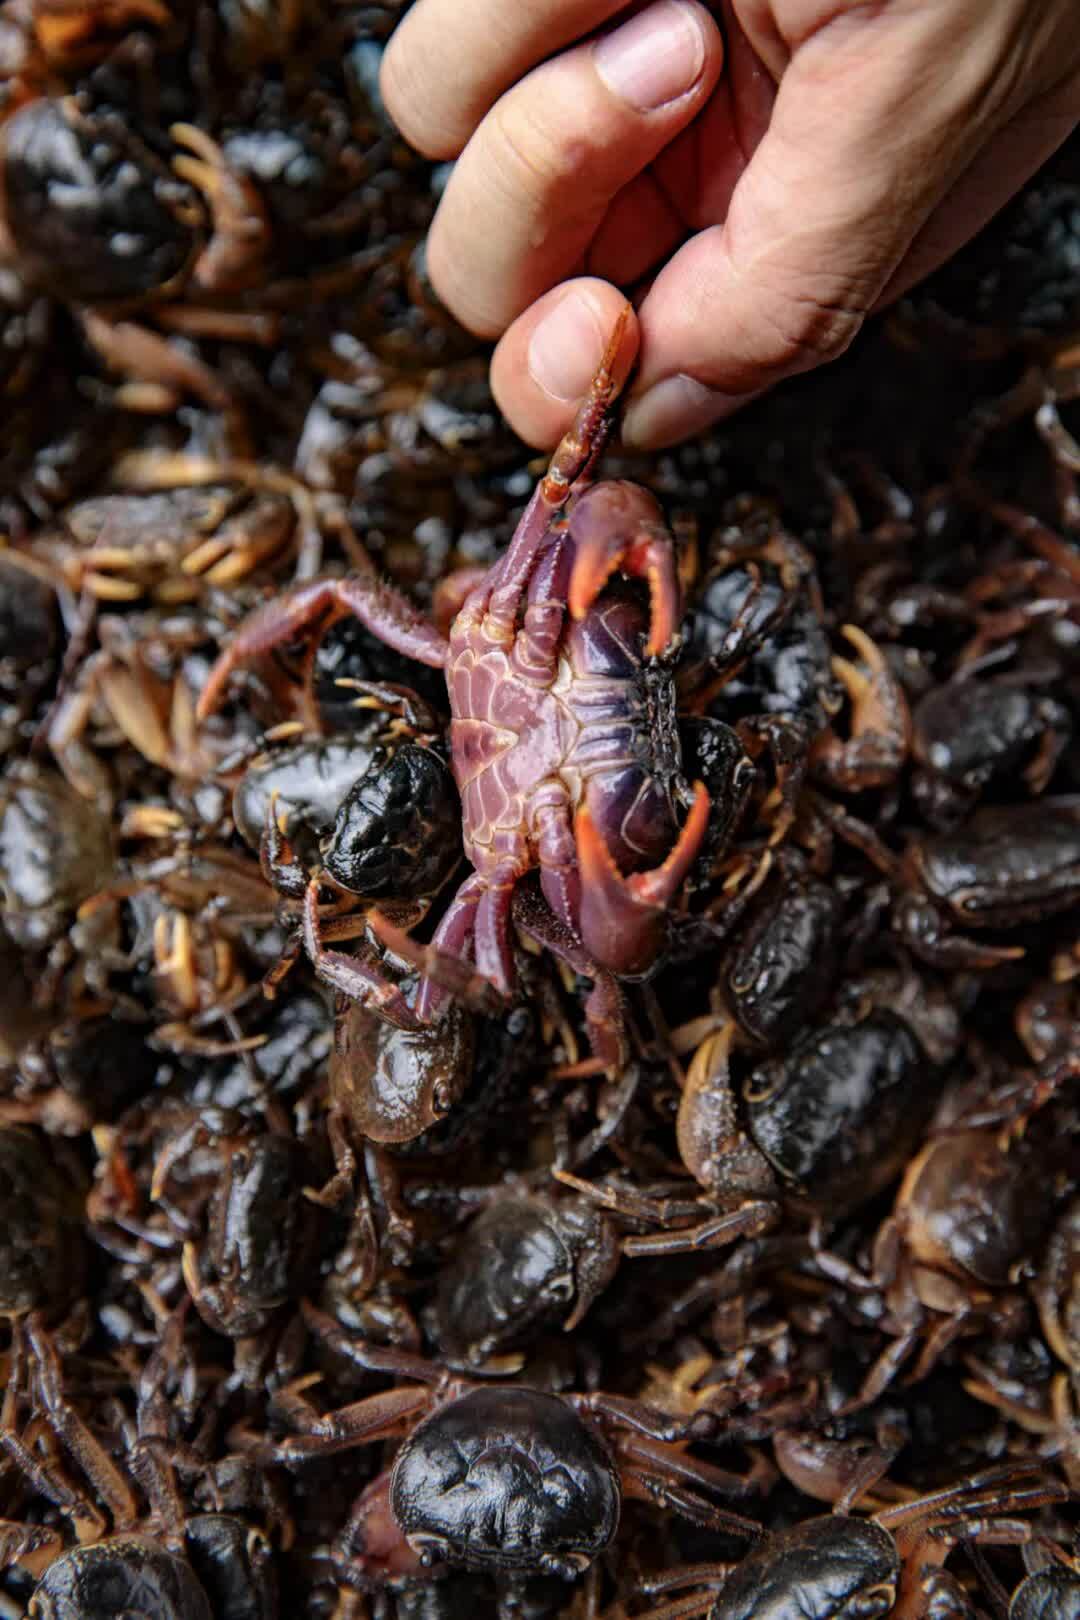 山中溪流的野生小螃蟹,也能做成香脆小零食,直接油炸或者舂碎了都很有